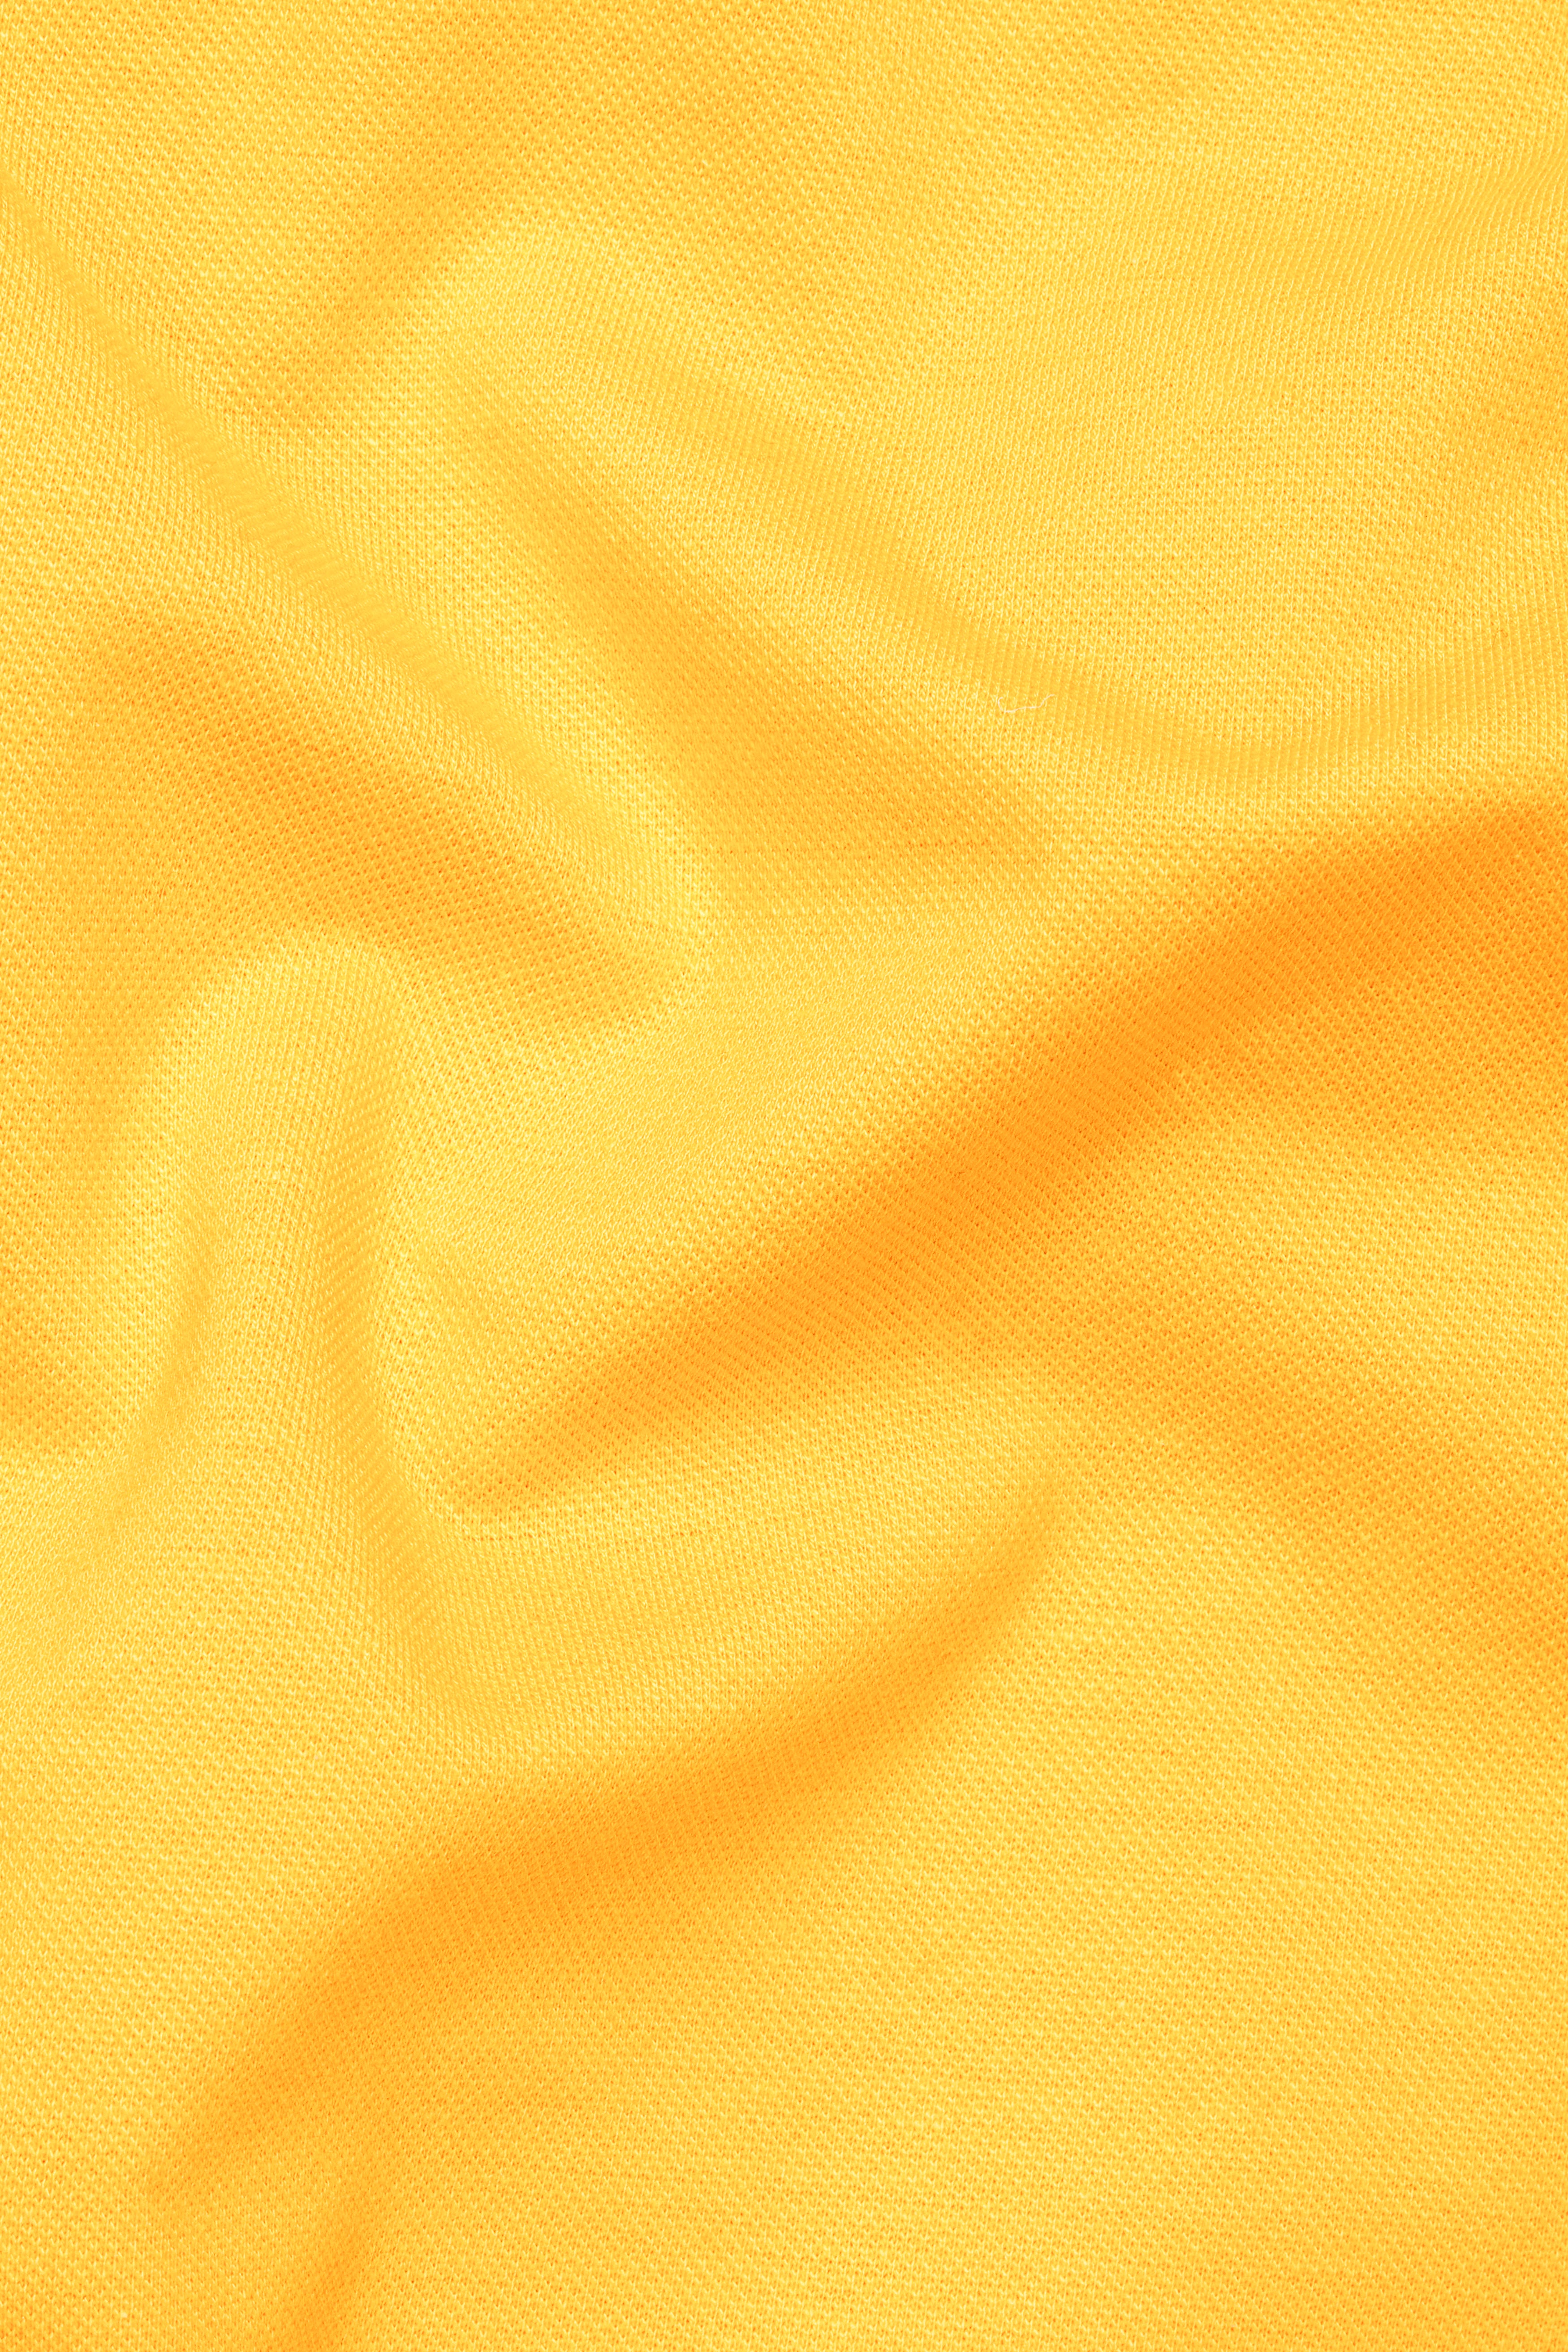 Sunglow Orange Premium Cotton Pique Polo TS941-S, TS941-M, TS941-L, TS941-XL, TS941-XXL